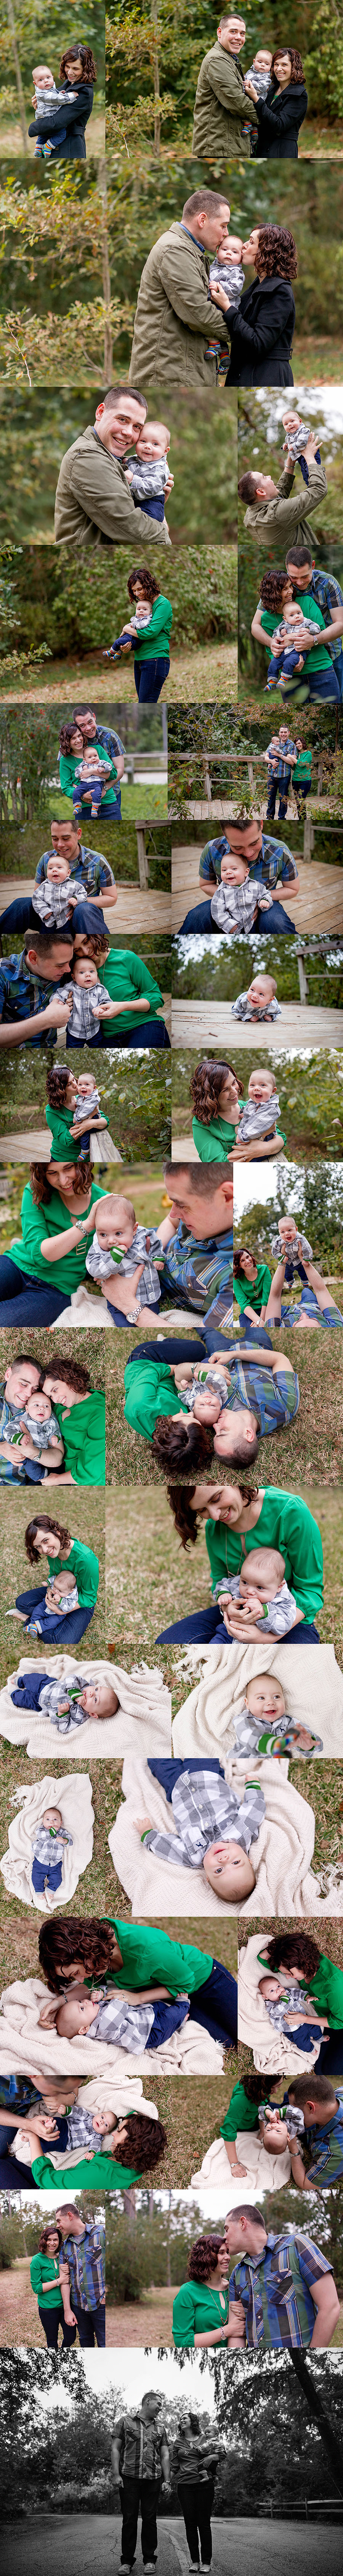 Houston Area Family Baby Photography